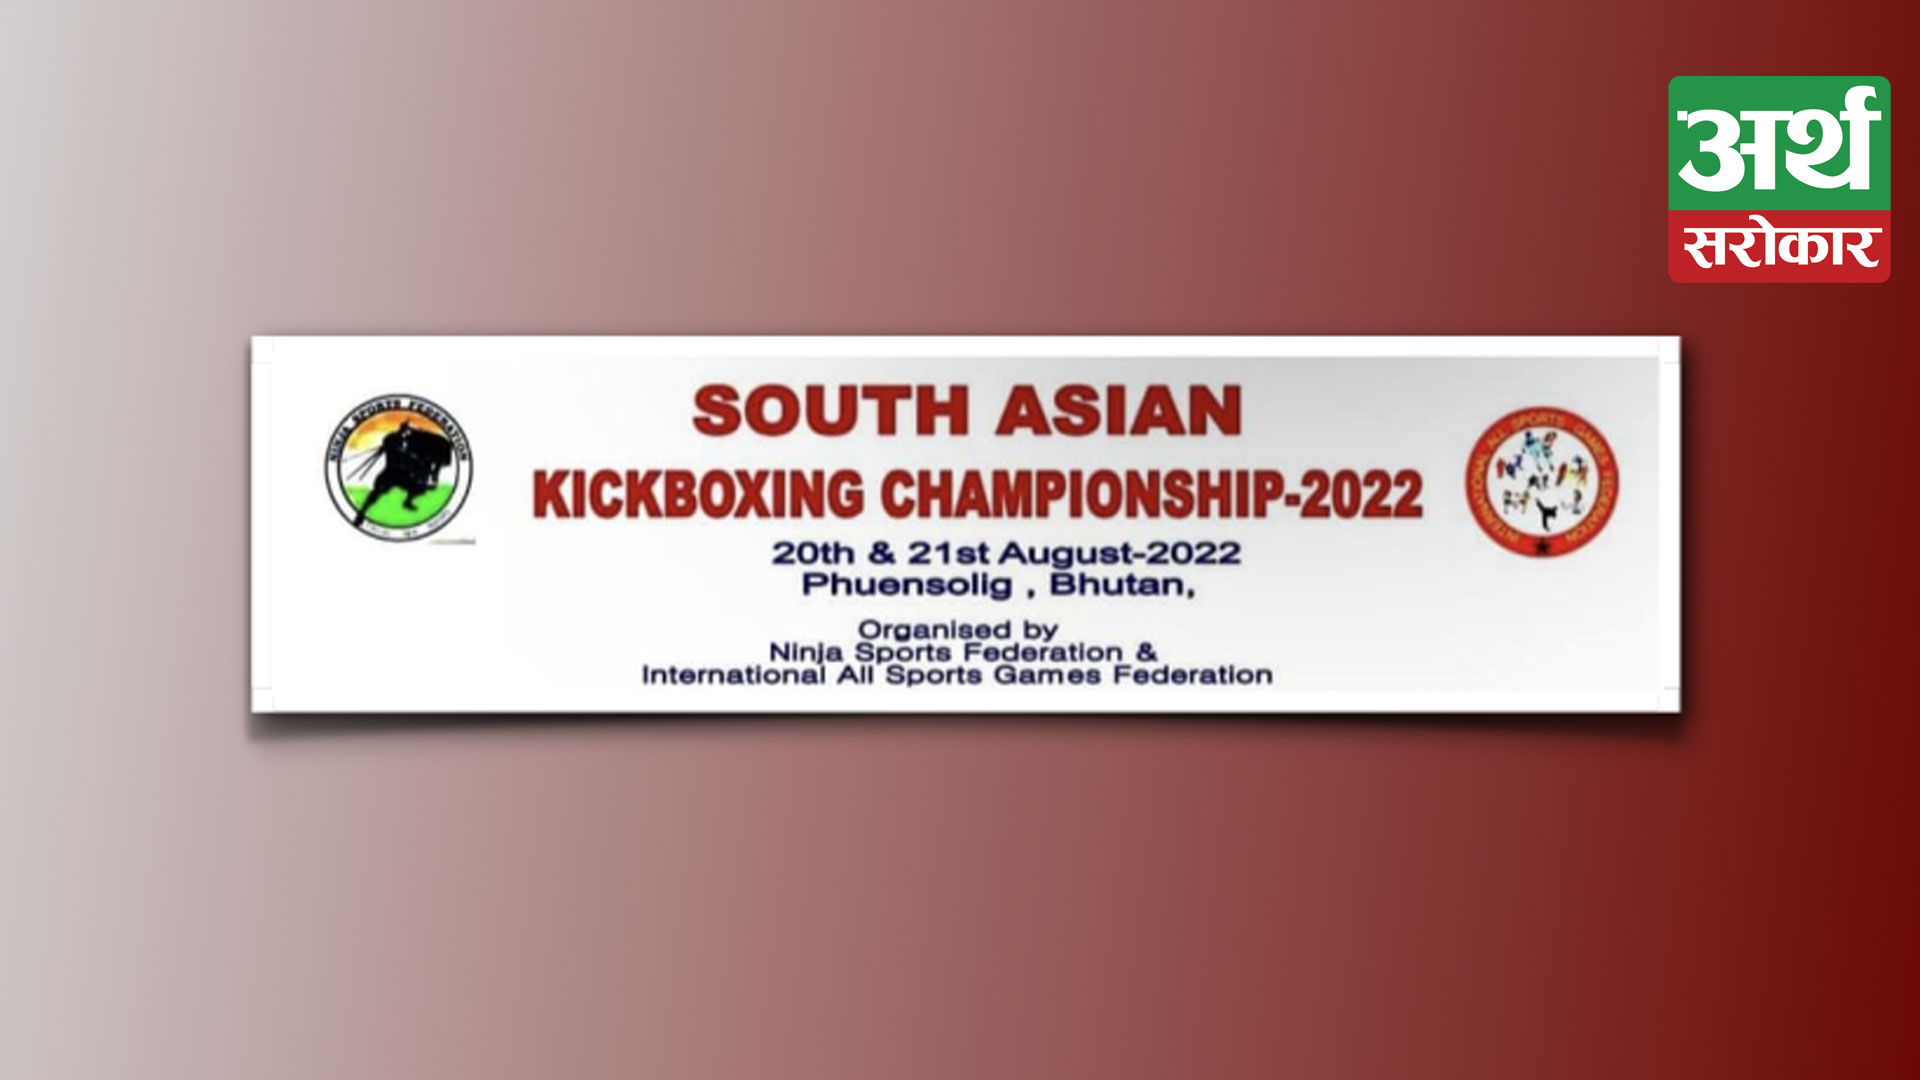 Bizbazar to sponsor national player in South Asian Kickboxing Championship 2022